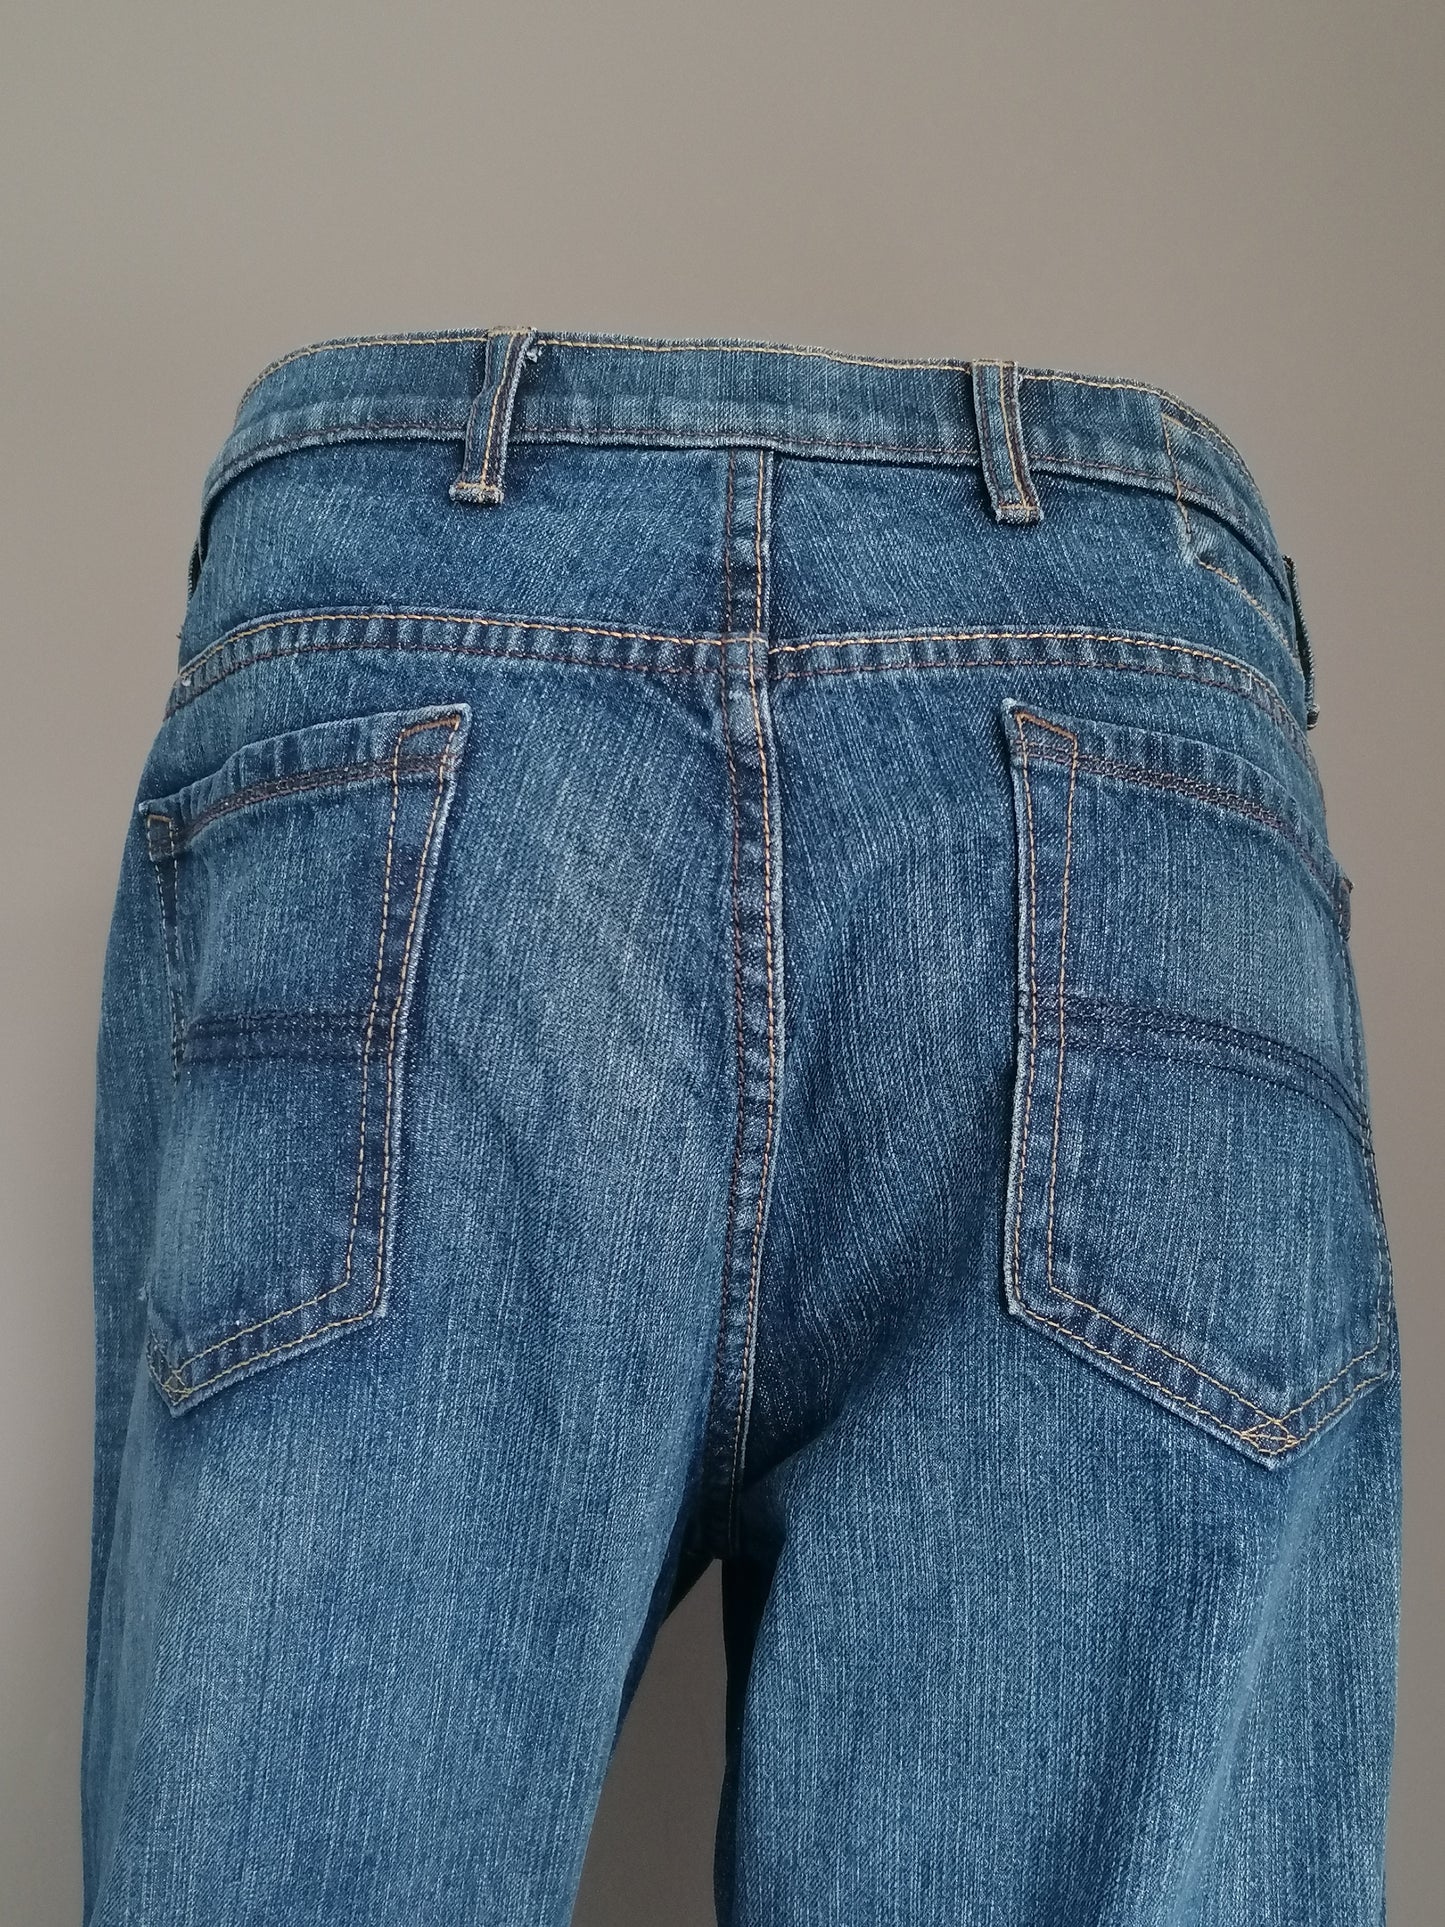 Blue Harbor Jeans. Dunkelblau gefärbt. Größe W38 - L30.